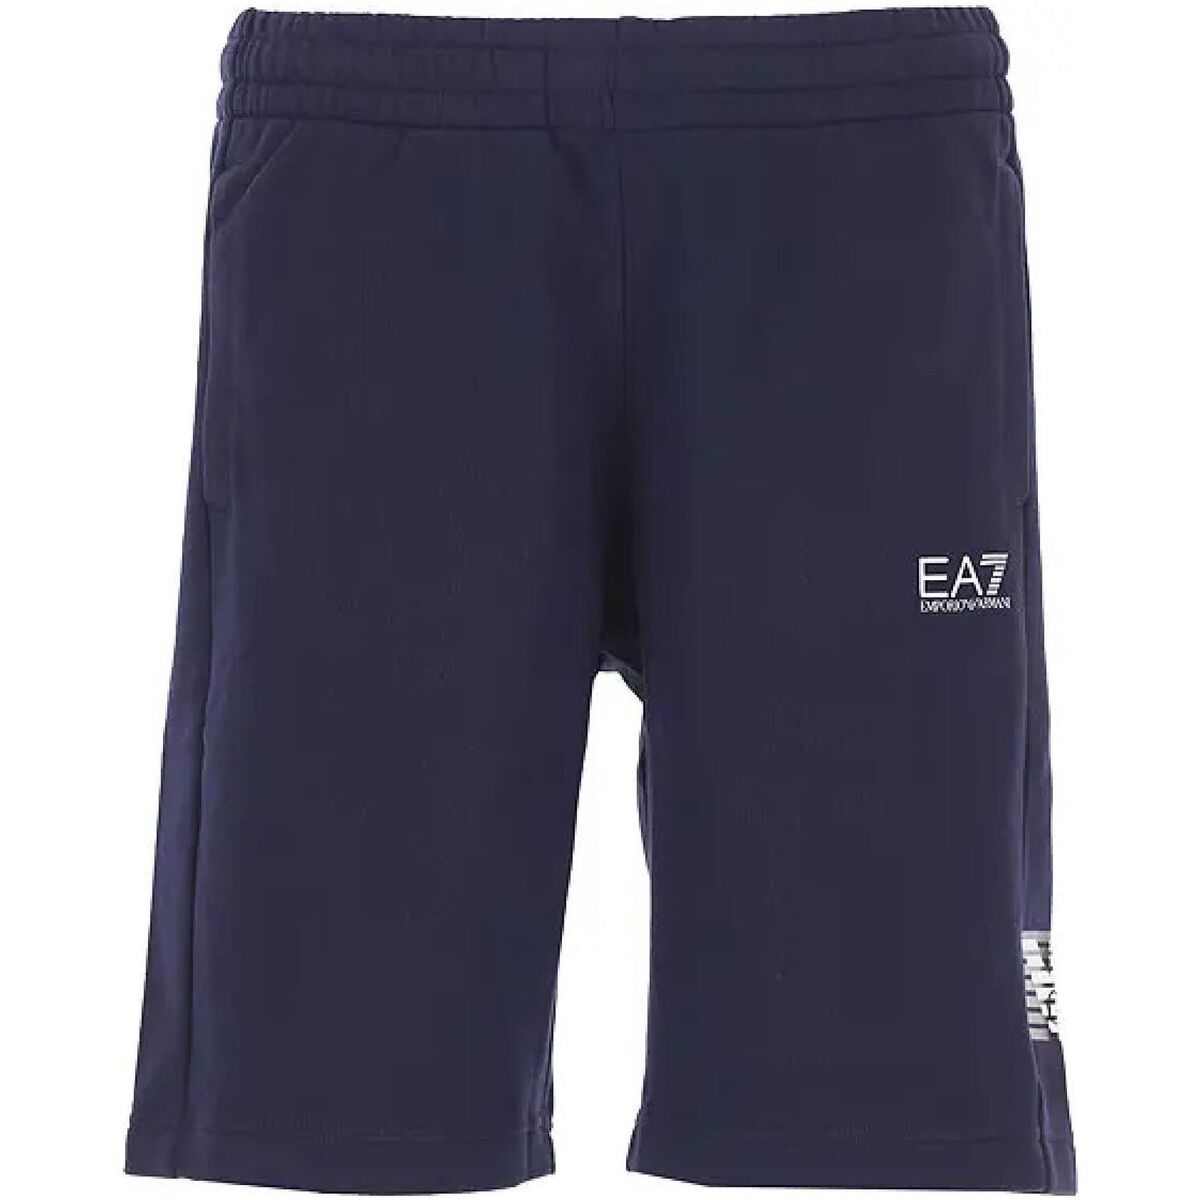 Abbigliamento Uomo Shorts / Bermuda Ea7 Emporio Armani 3LPS76PJEQZ1554 Blu